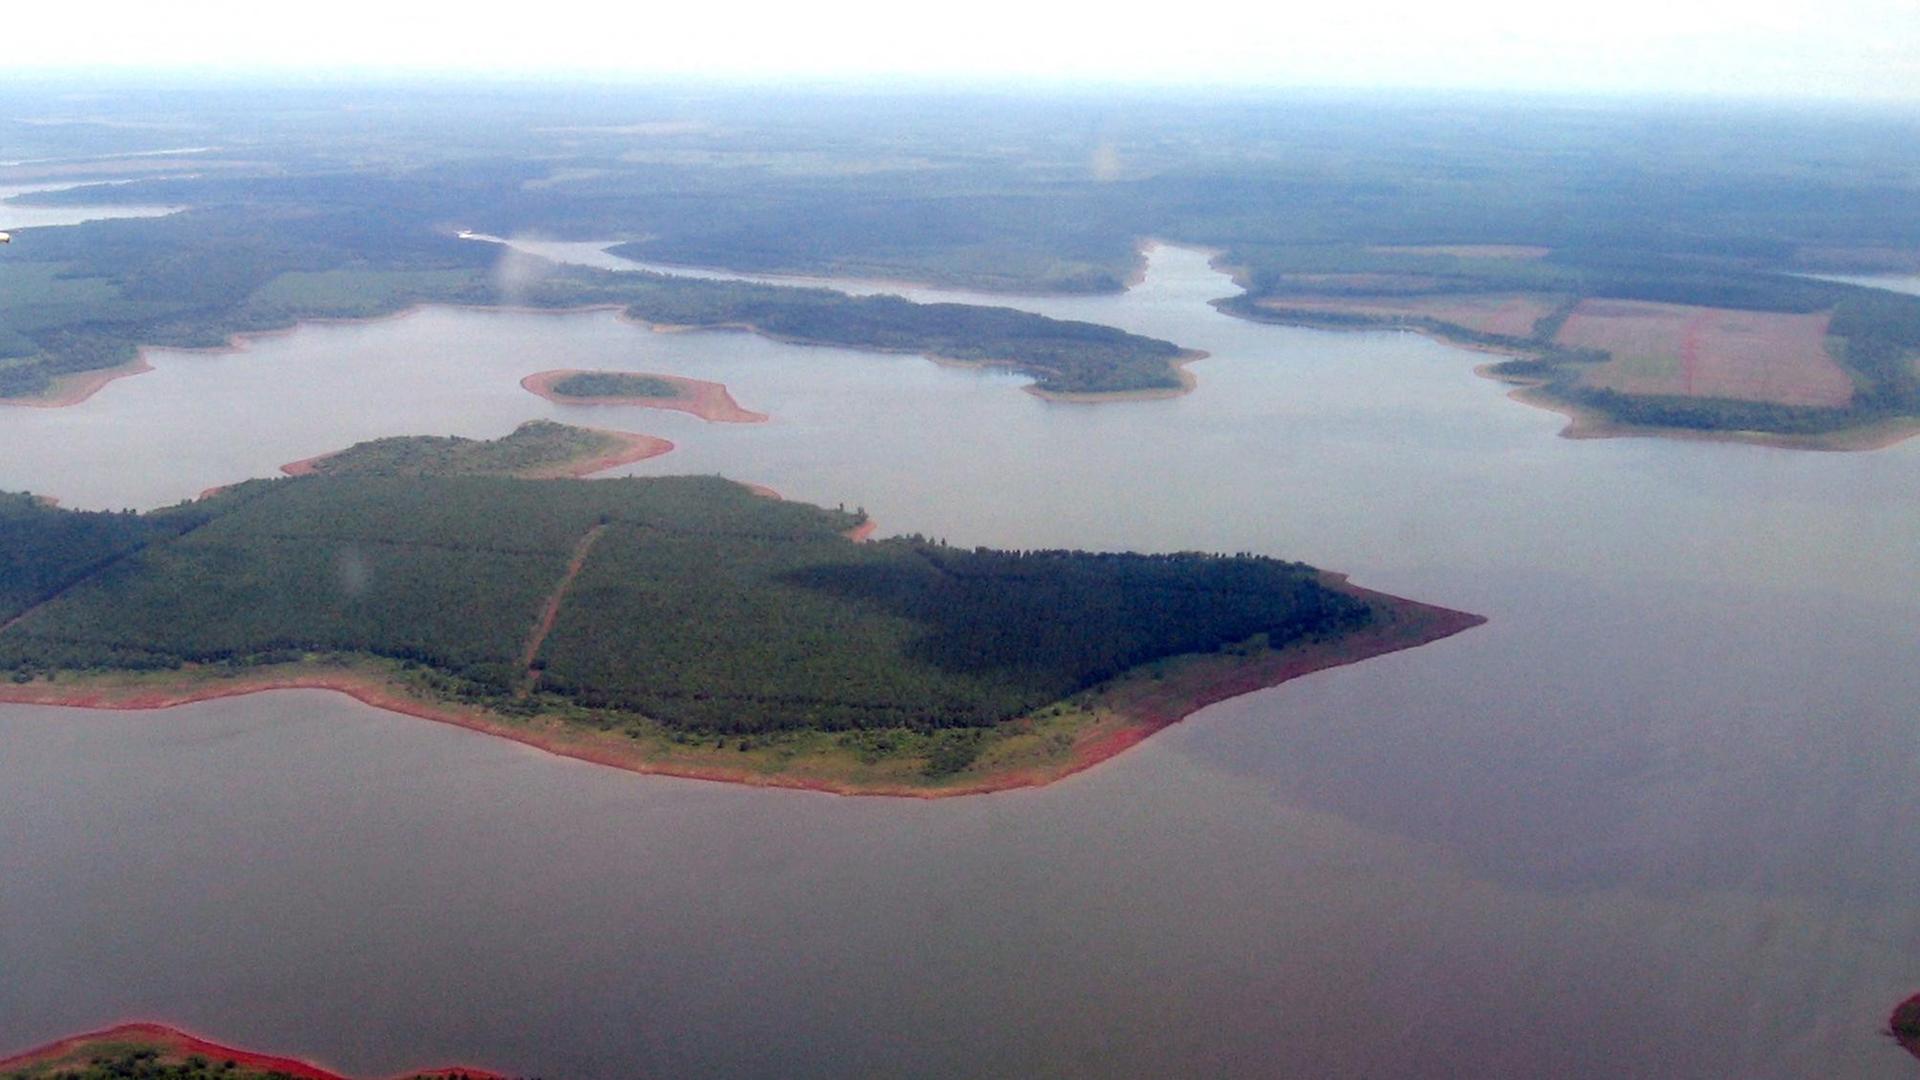 Flusslandschaft des Rio Parana in Argentinien mit einer Insel